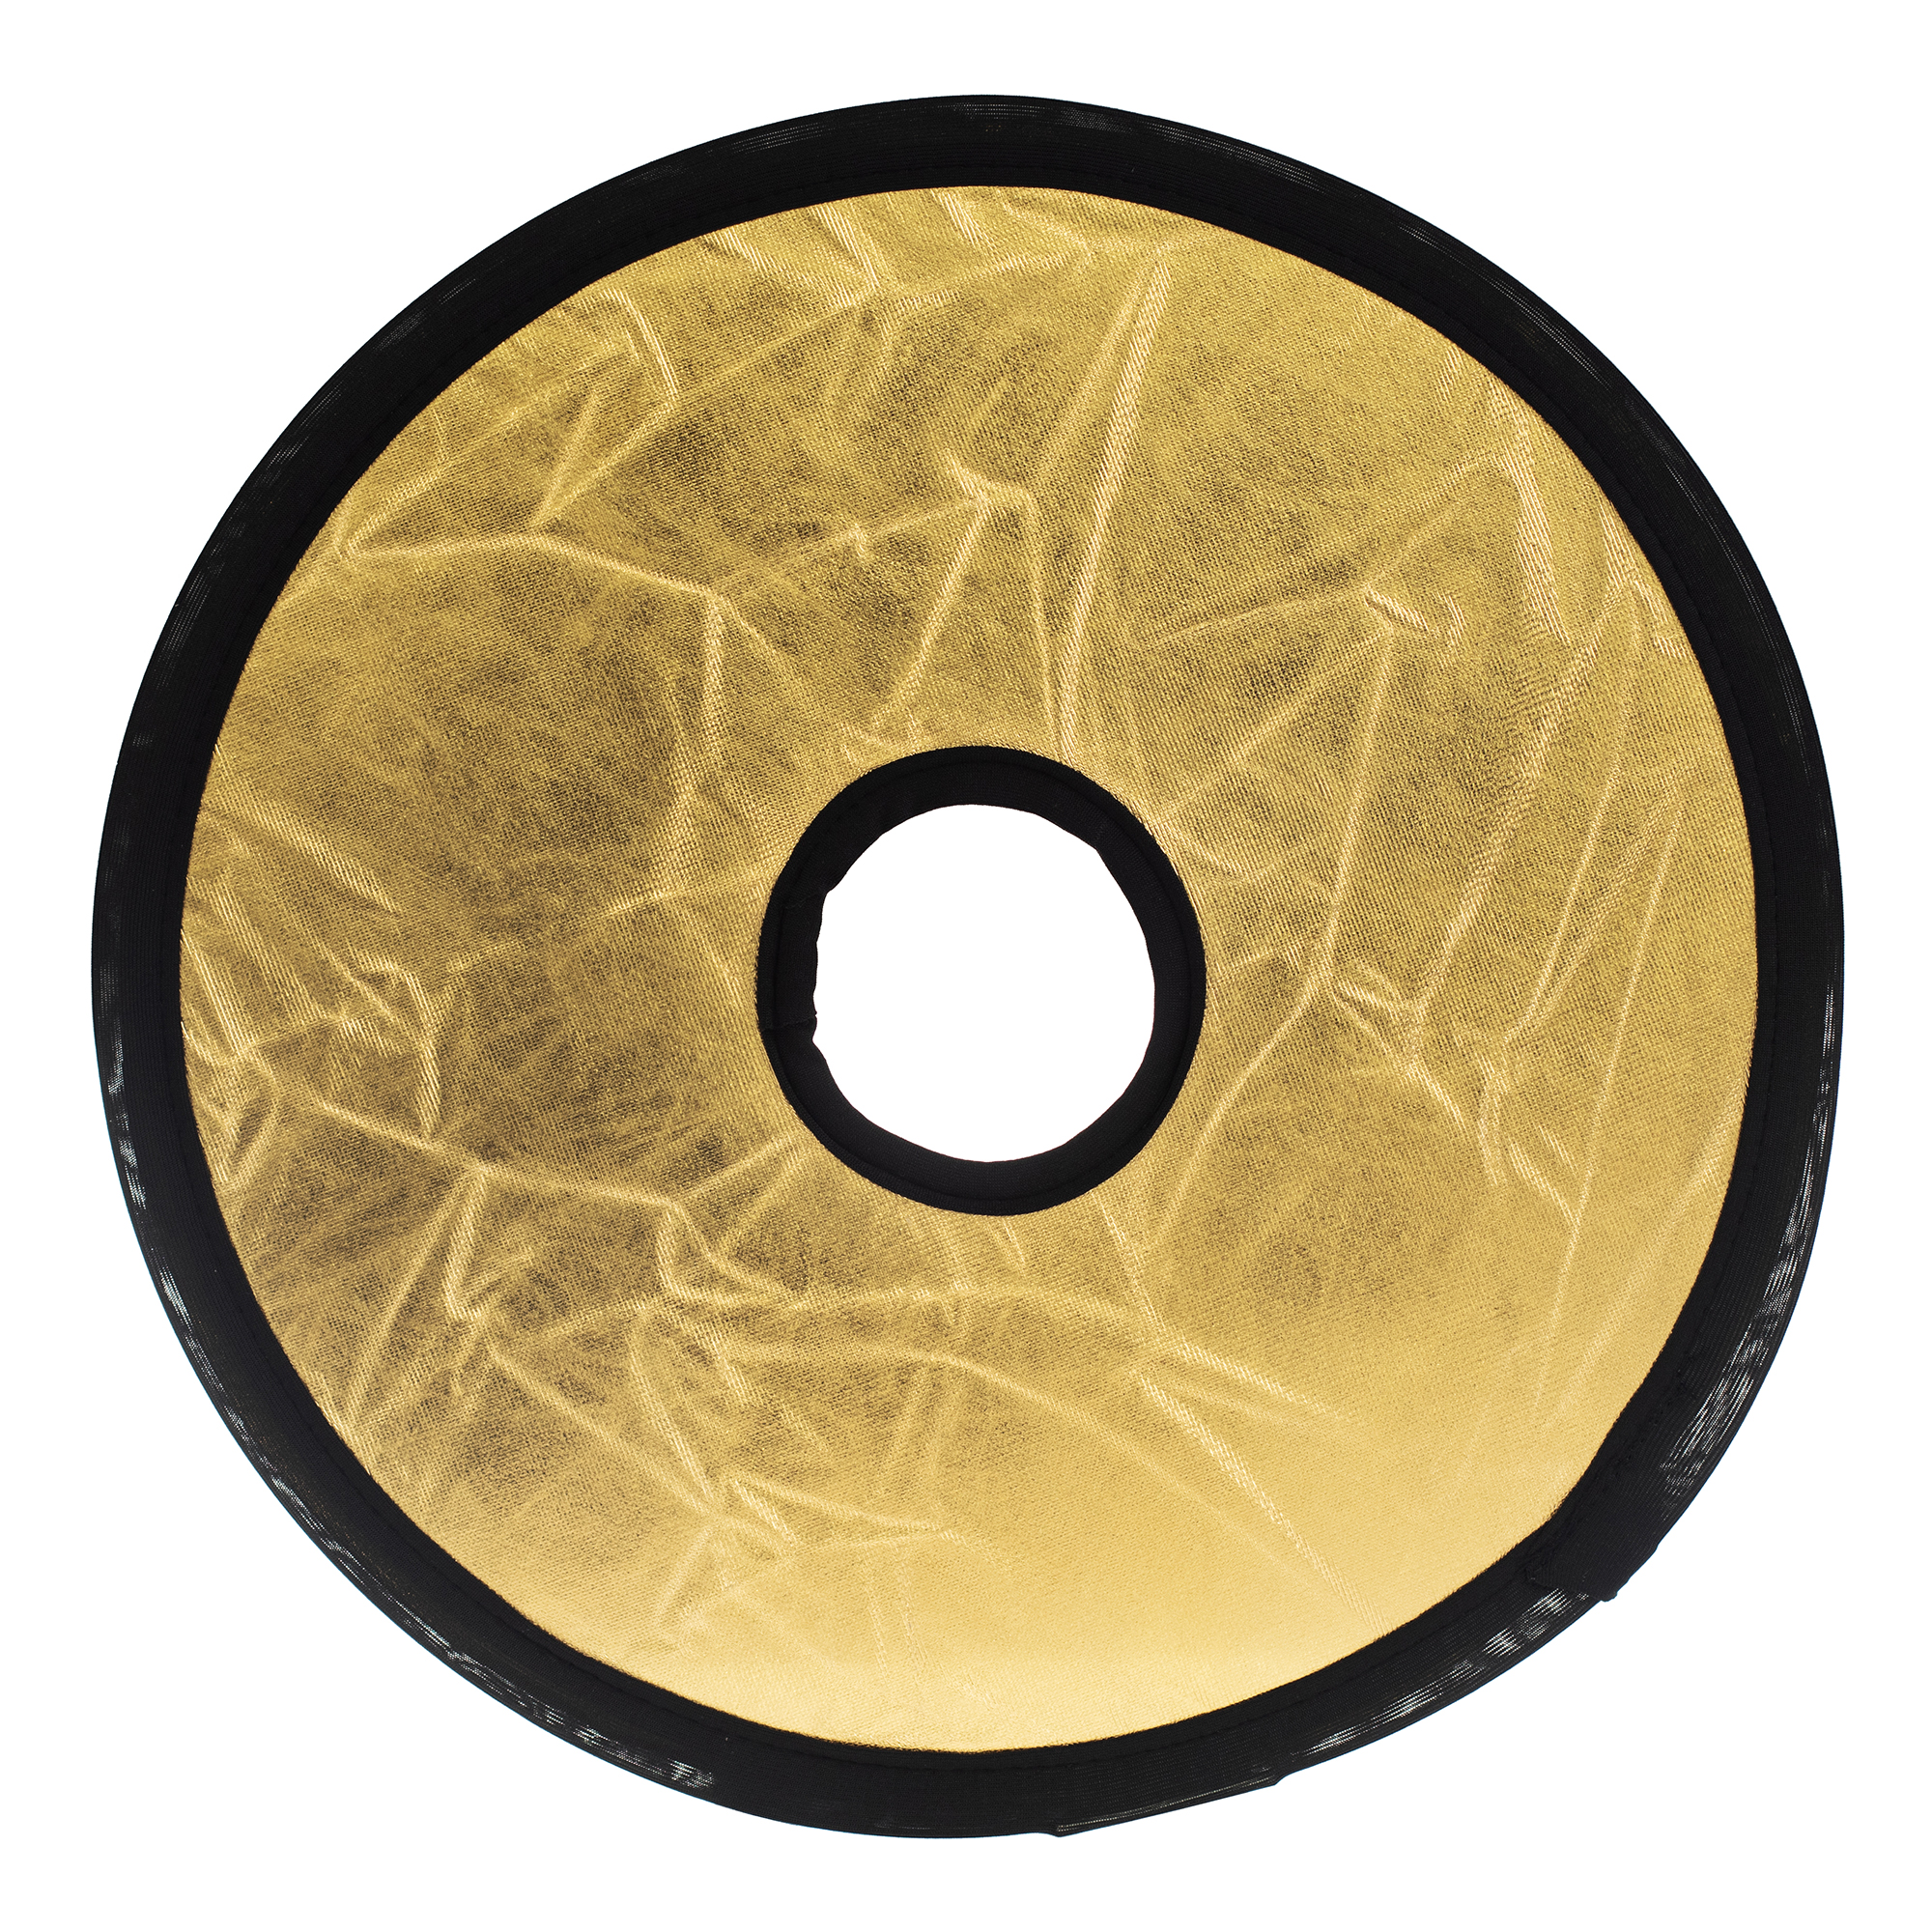 ayex 2in1 Faltreflektor Mount Lichtreflektor rund mit Objektivöffnung, Gold/Silber 30cm